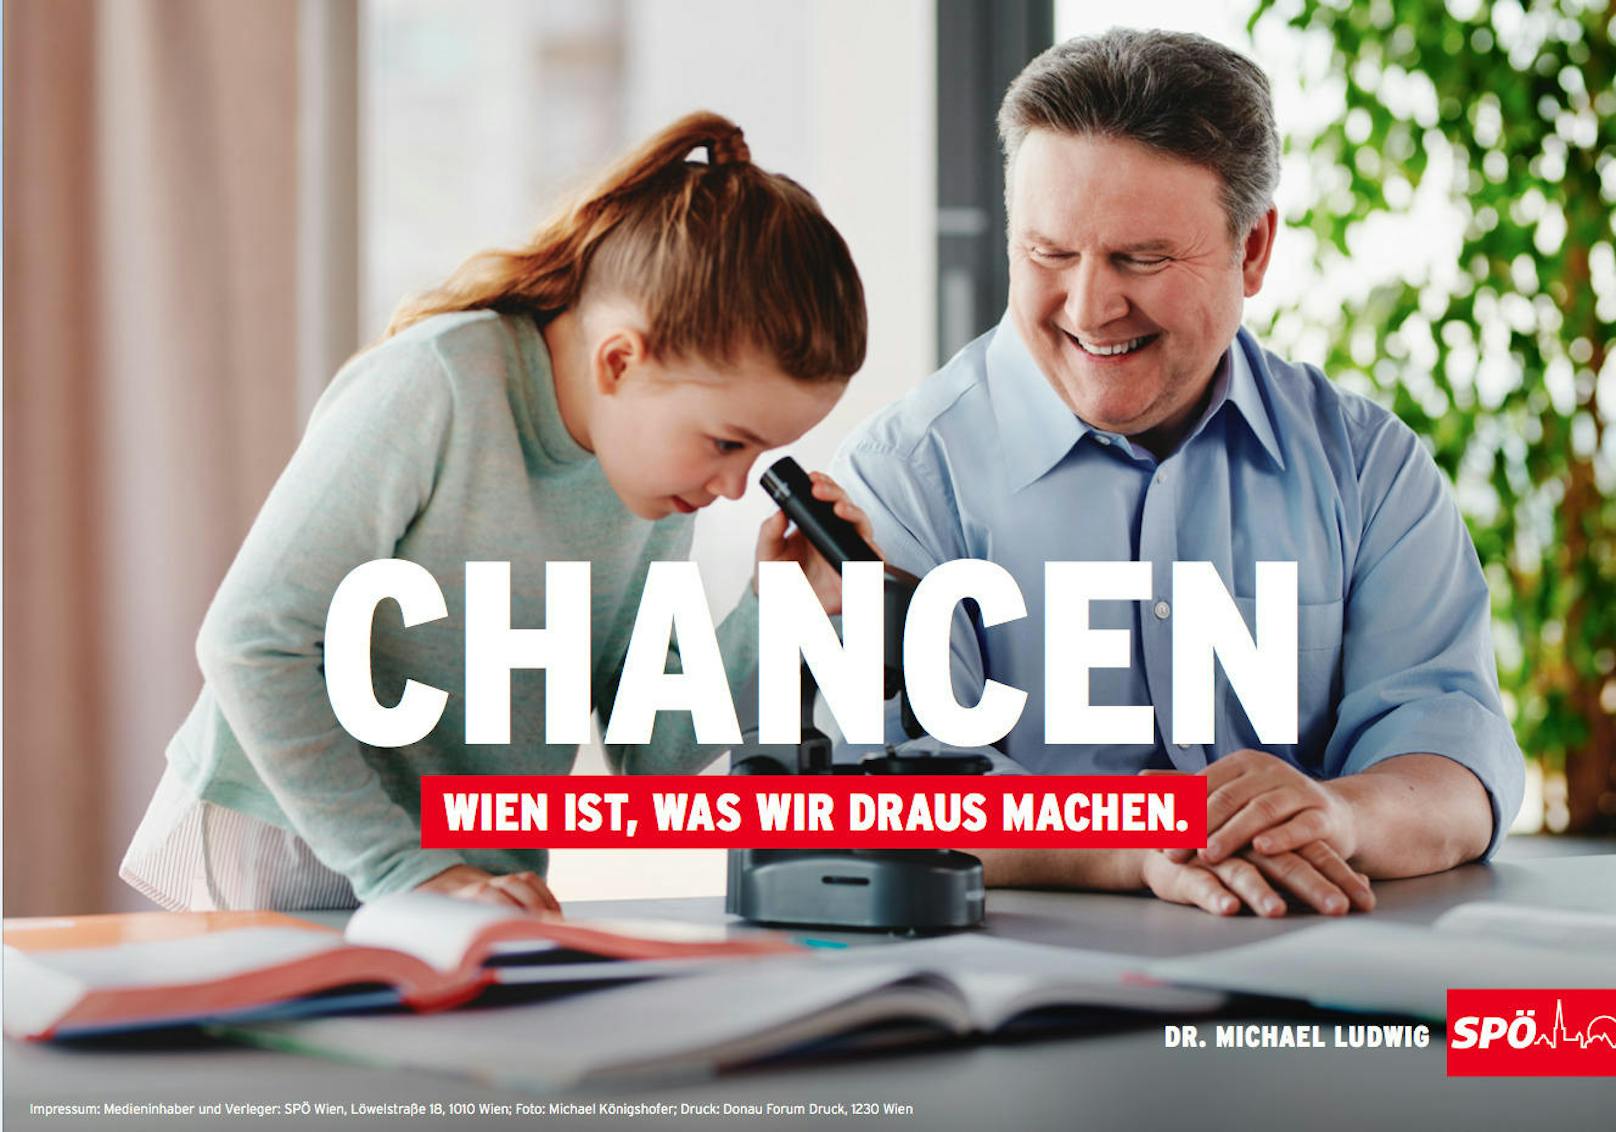 Ab 3. Mai hängen rund 1.000 Plakate der neuen Kampagne der SPÖ Wien. Das Motto: "Wien ist, was wir draus machen." Eines der Schwerpunkt-Themen: "Chancen". Hintergrund: Jeder Mensch soll in dieser Stadt die selben Chancen haben.